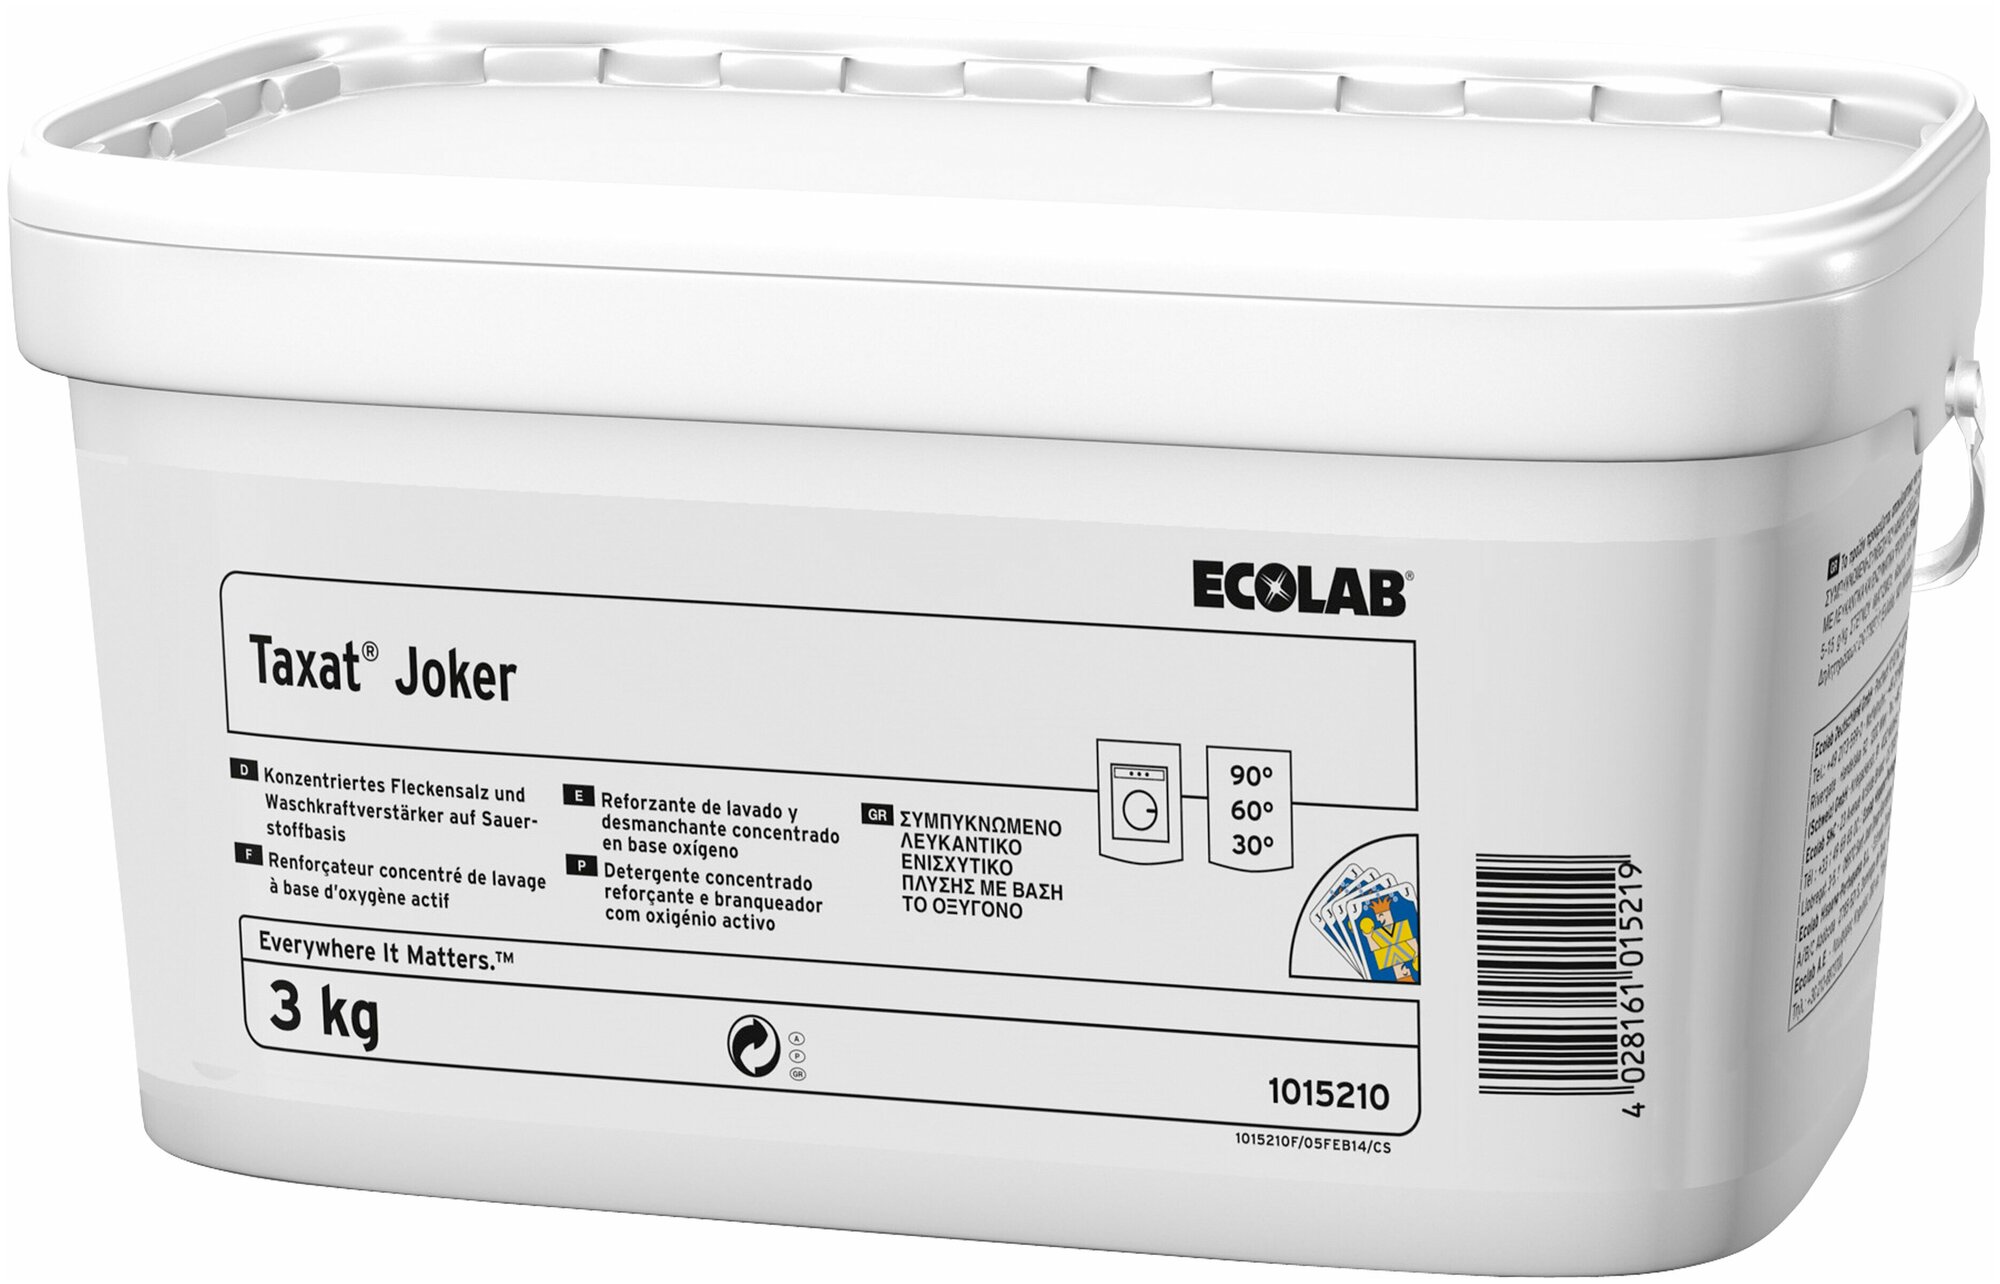 Порошкообразный кислородный отбеливатель Ecolab "Taxat Joker" 3кг